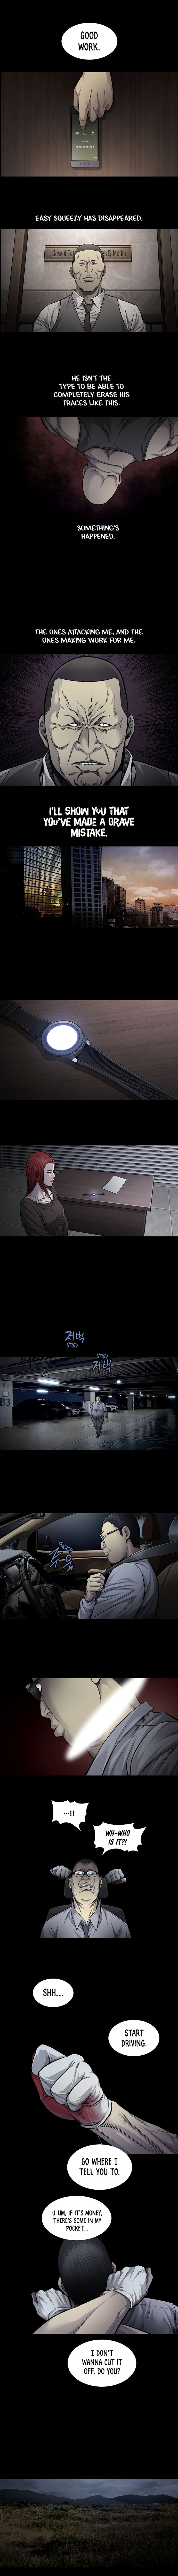 Vigilante - Chapter 74 Page 5